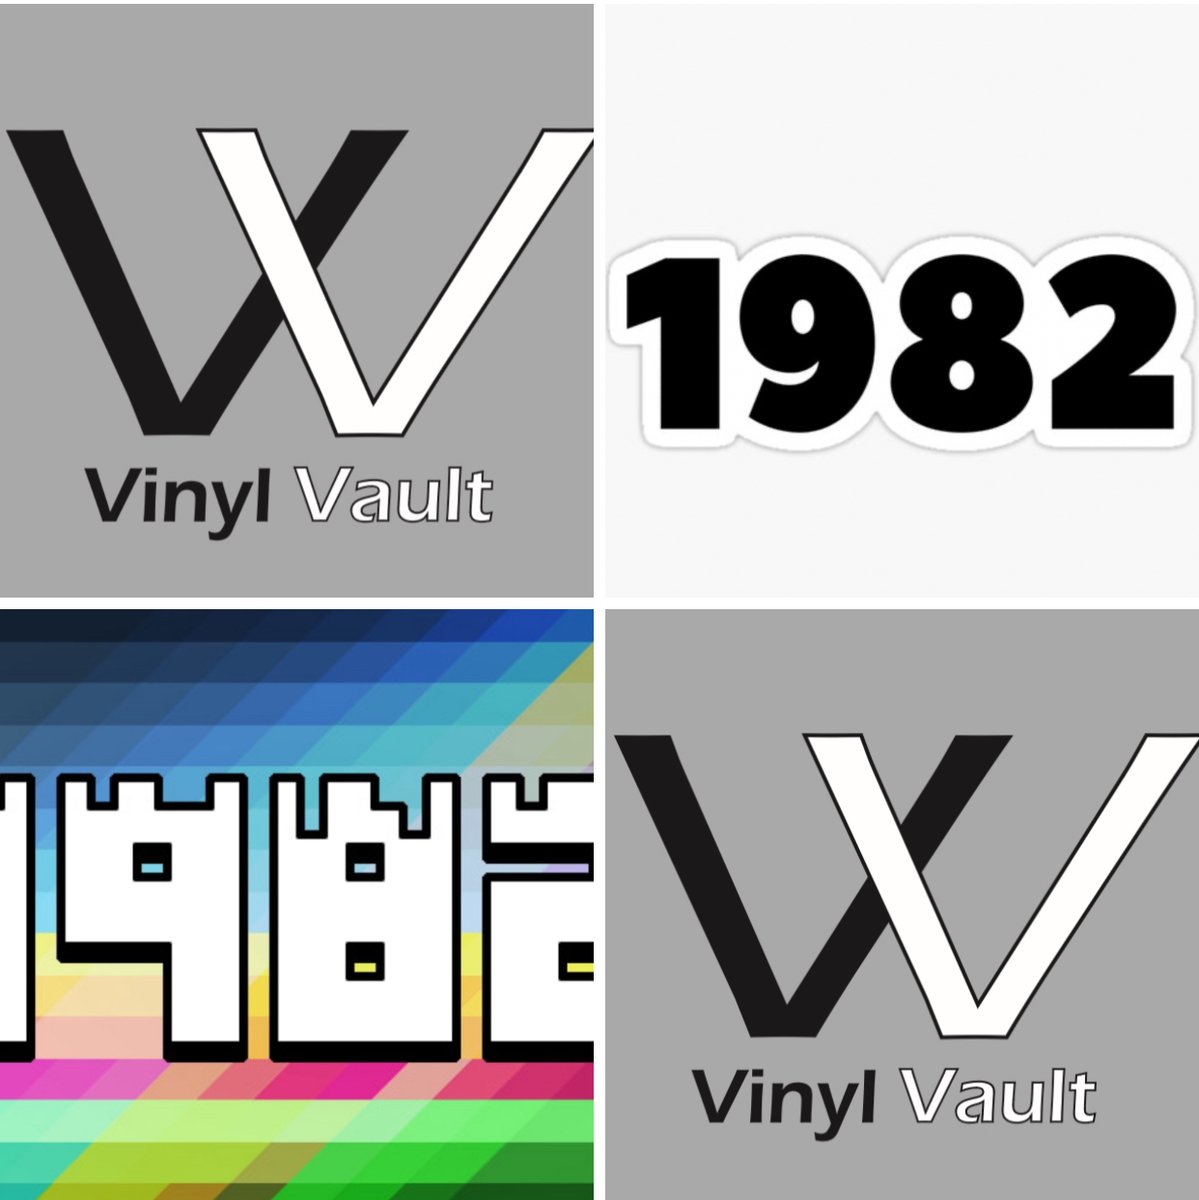 'Vinyl Vault - 1982' - what would you choose? Listen on Mixcloud.com - mixcloud.com/LateLateProduc… #1982pop #1982music #vinylvault #1980s #1980smusic #mixcloud